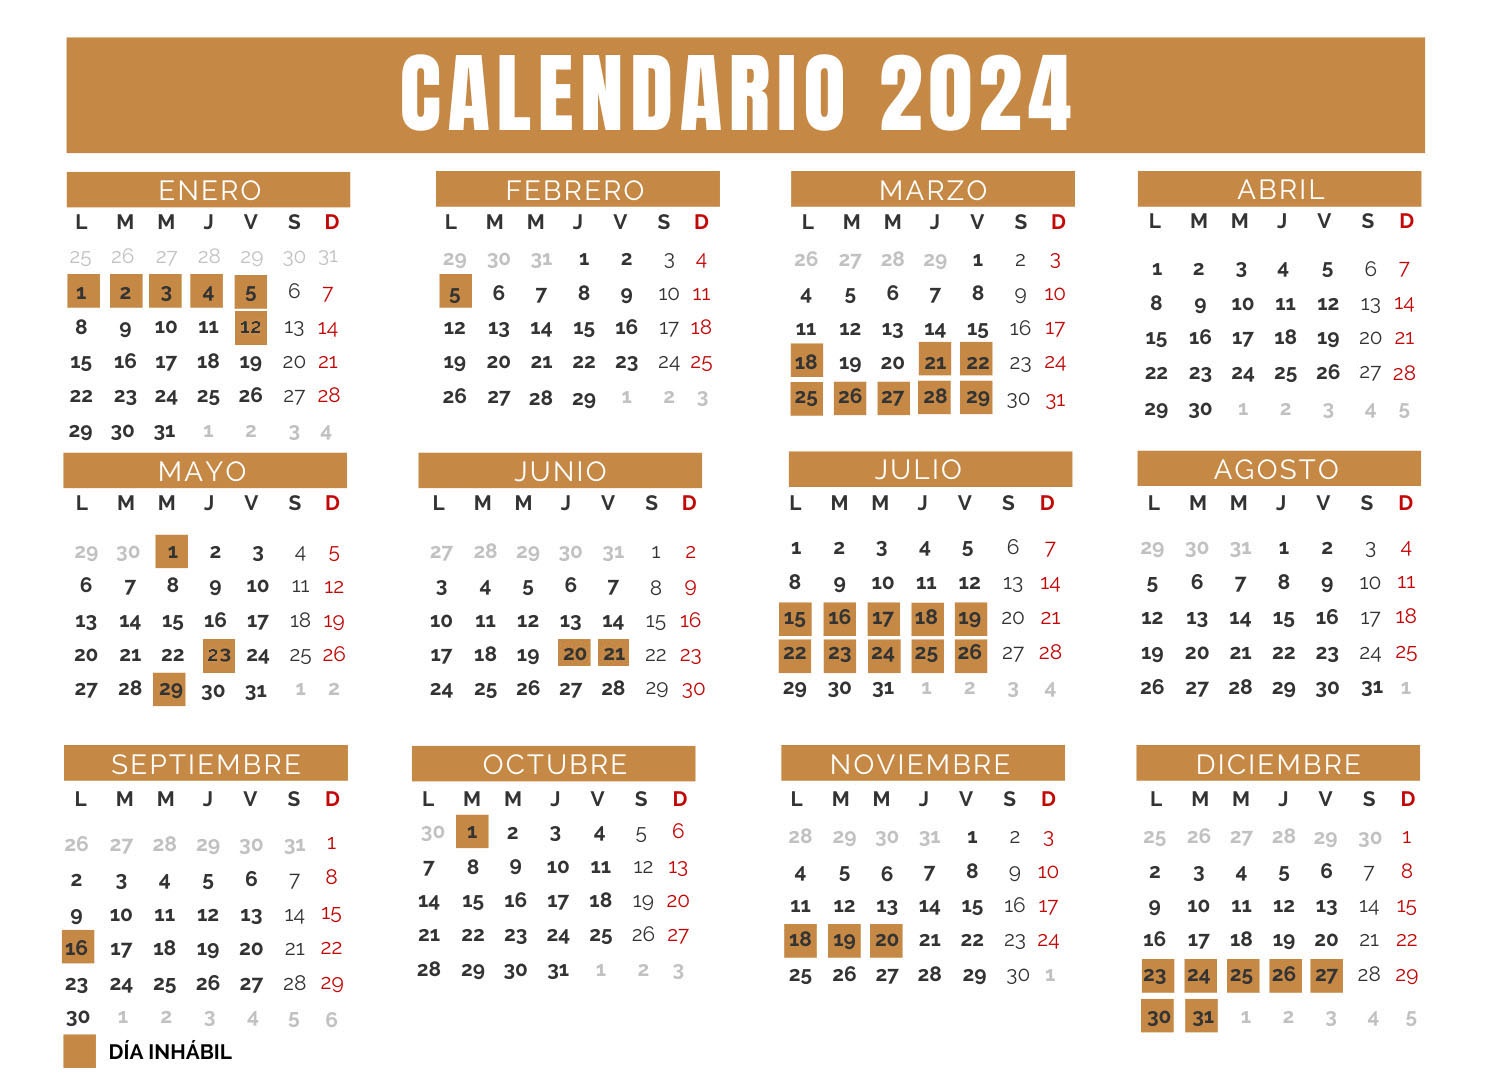 Calendario TJA 2023